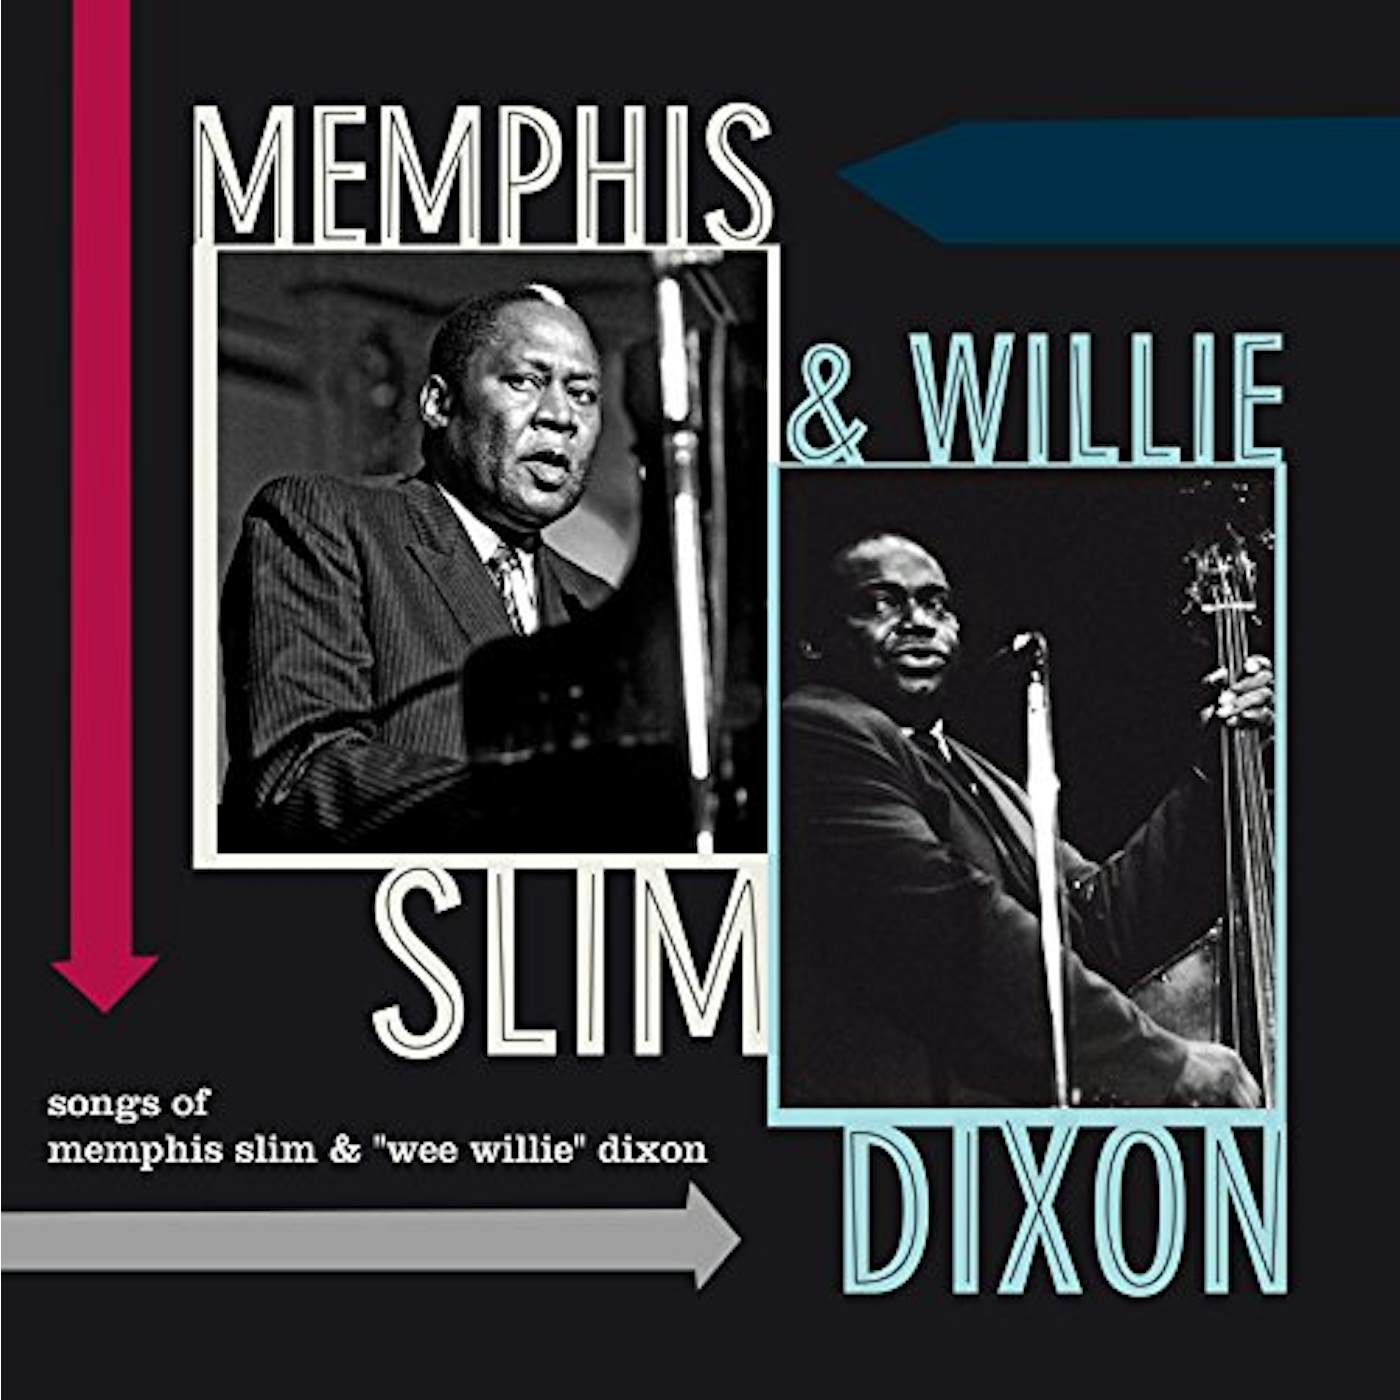 Memphis Slim and Willie Dixon Songs Of Memphis Slim & Willie Dixon Vinyl Record